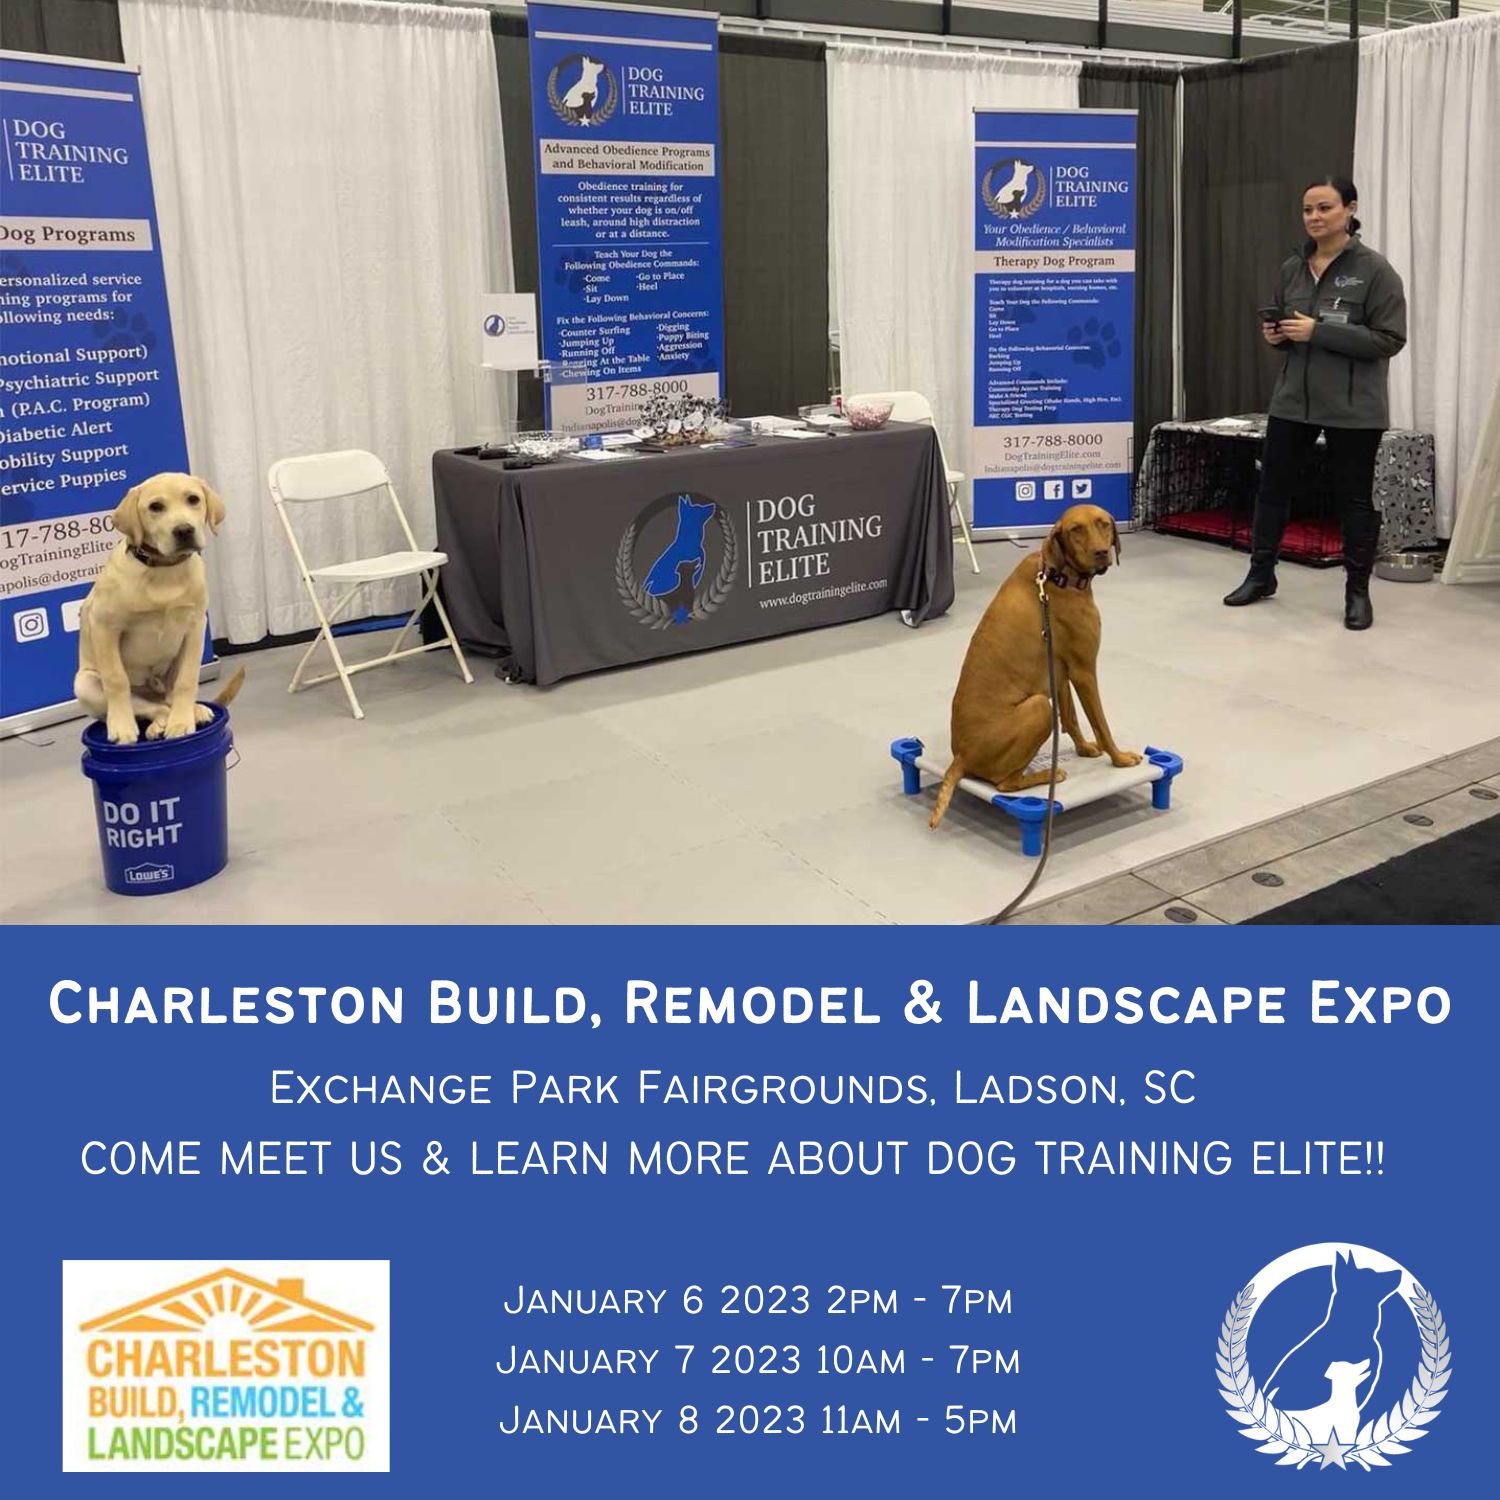 Dog Training Elite Charleston Build, Remodel & Landscape Expo